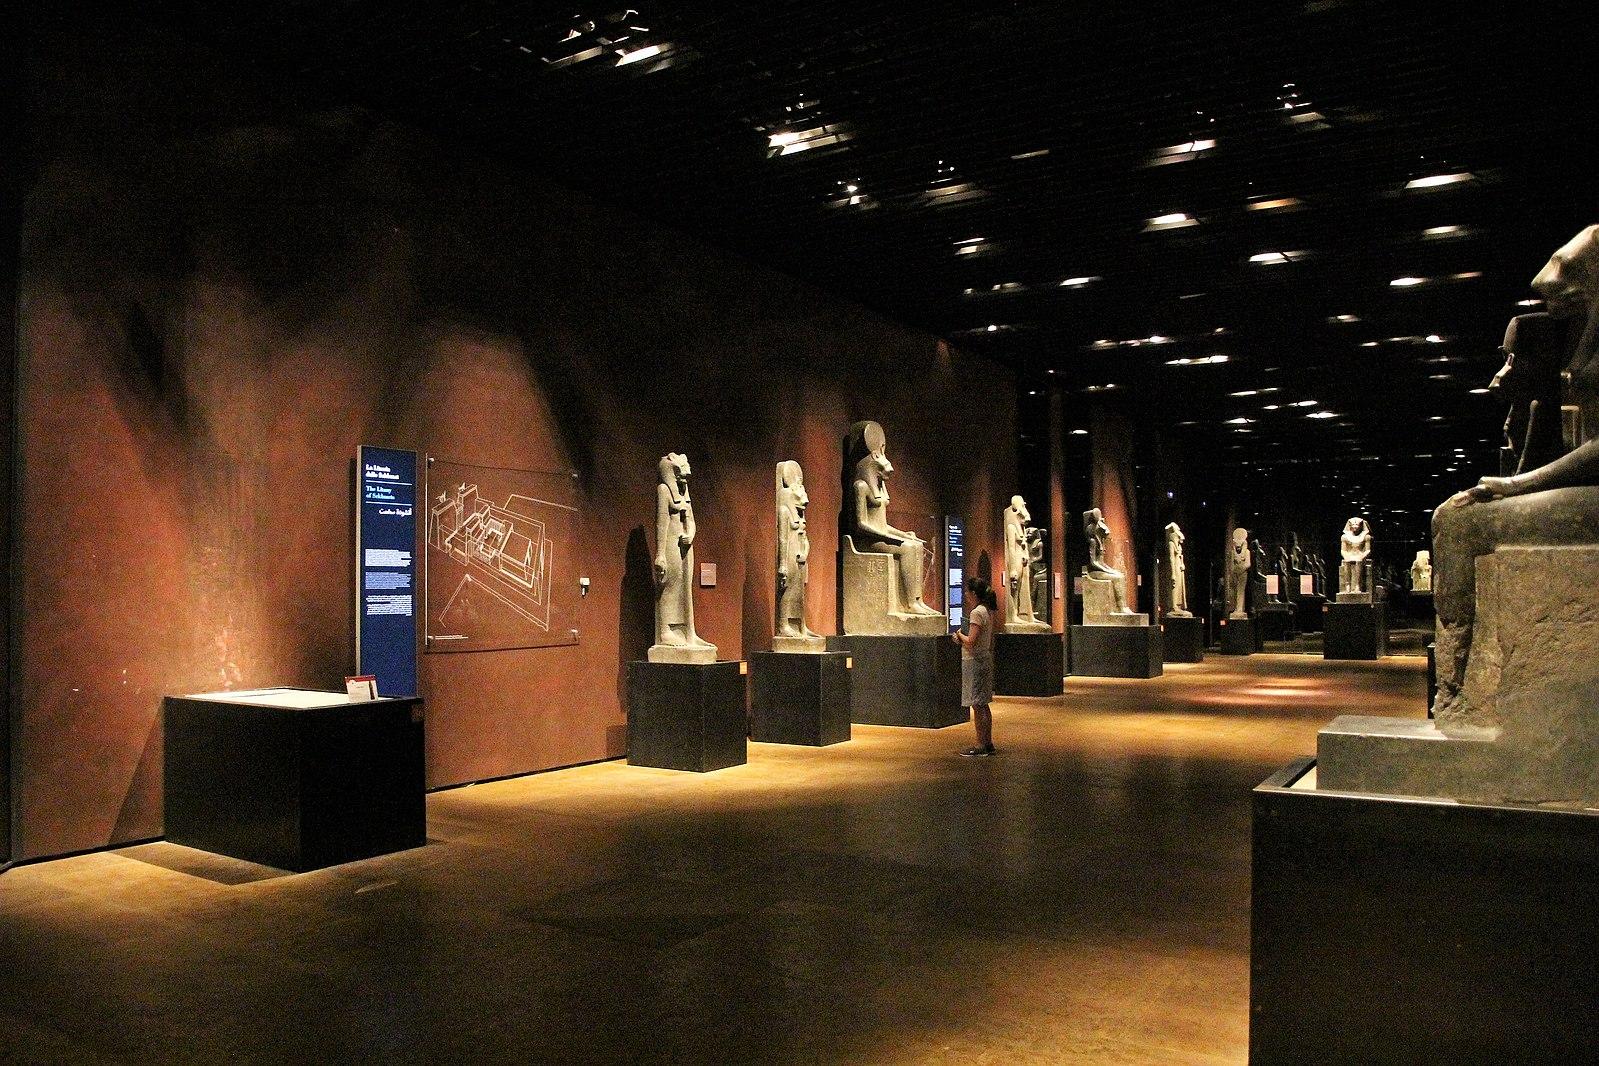 Una sala dello statuario del Museo Egizio. Lungo le pareti sono sistemate alcune statue di grandi dimensioni raffiguranti personaggi dell'antico egizio nelle caratteristiche posture, sia in piedi che sedute.